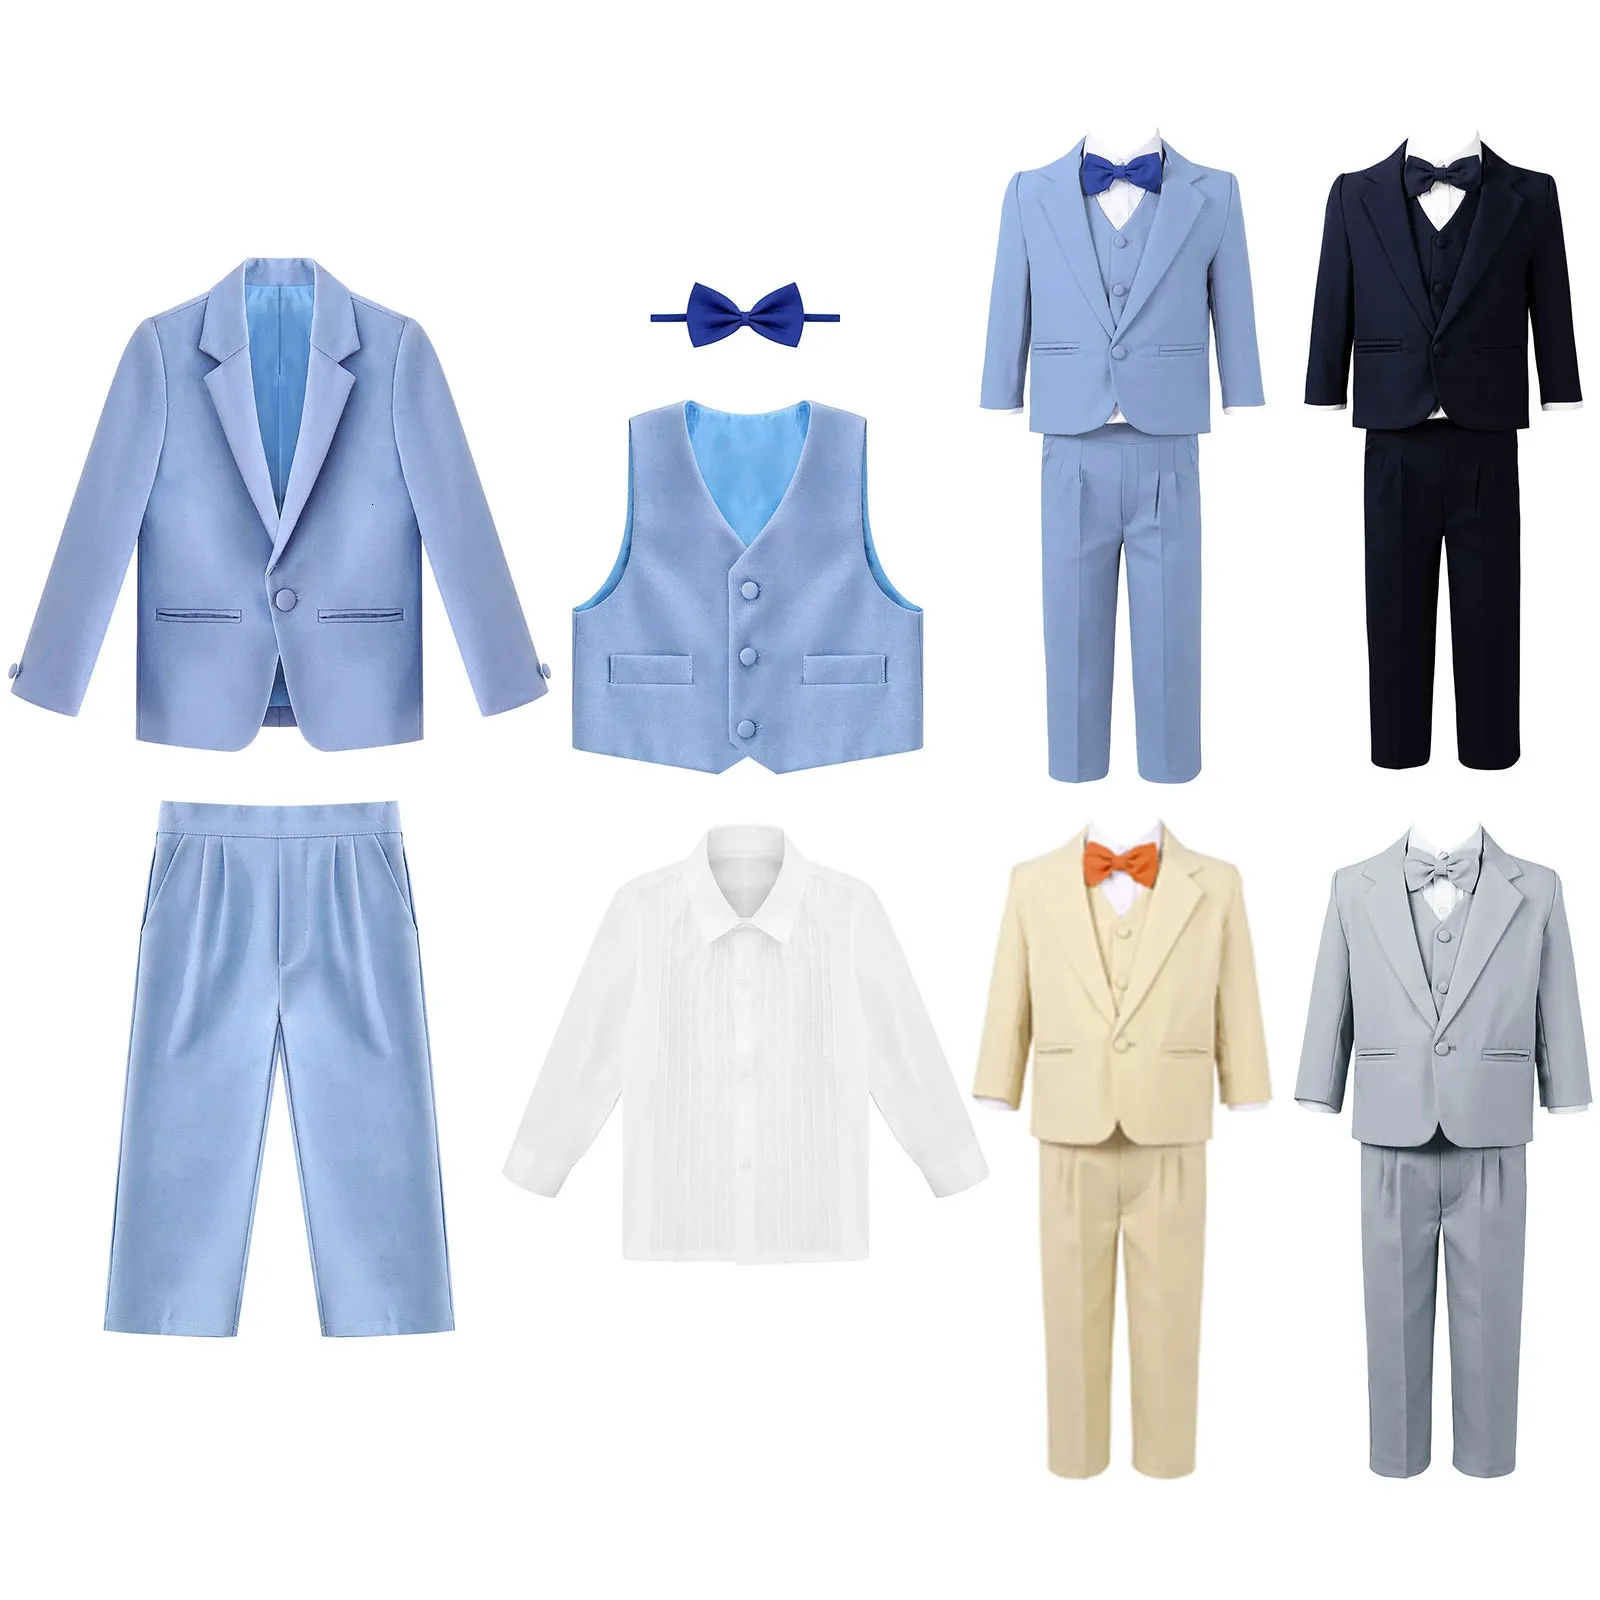 Spring Autumn Baby Boys Suit Set Kids Gentleman Blazer Vest Shirt Bow Tie Pants 5Pcs Sets Children Wedding Party Formal Clothes 240109